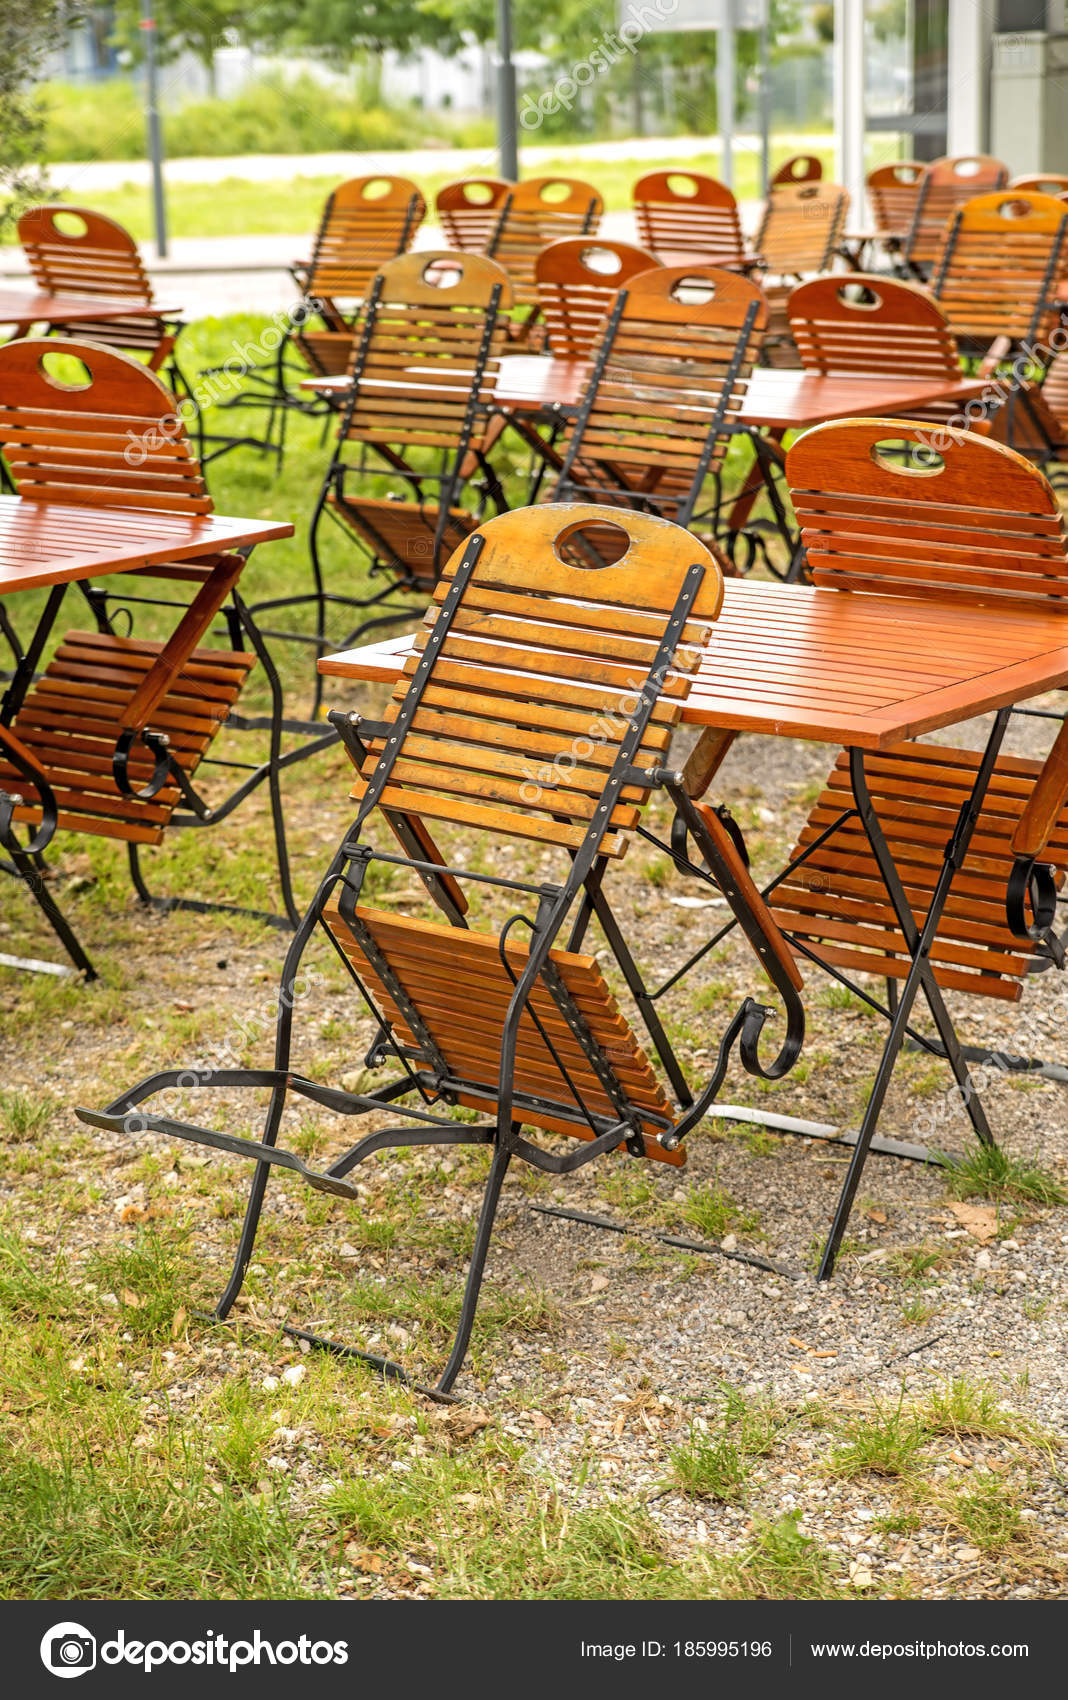 German Beer Garden Wooden Chairs Outdoor Stock Photo